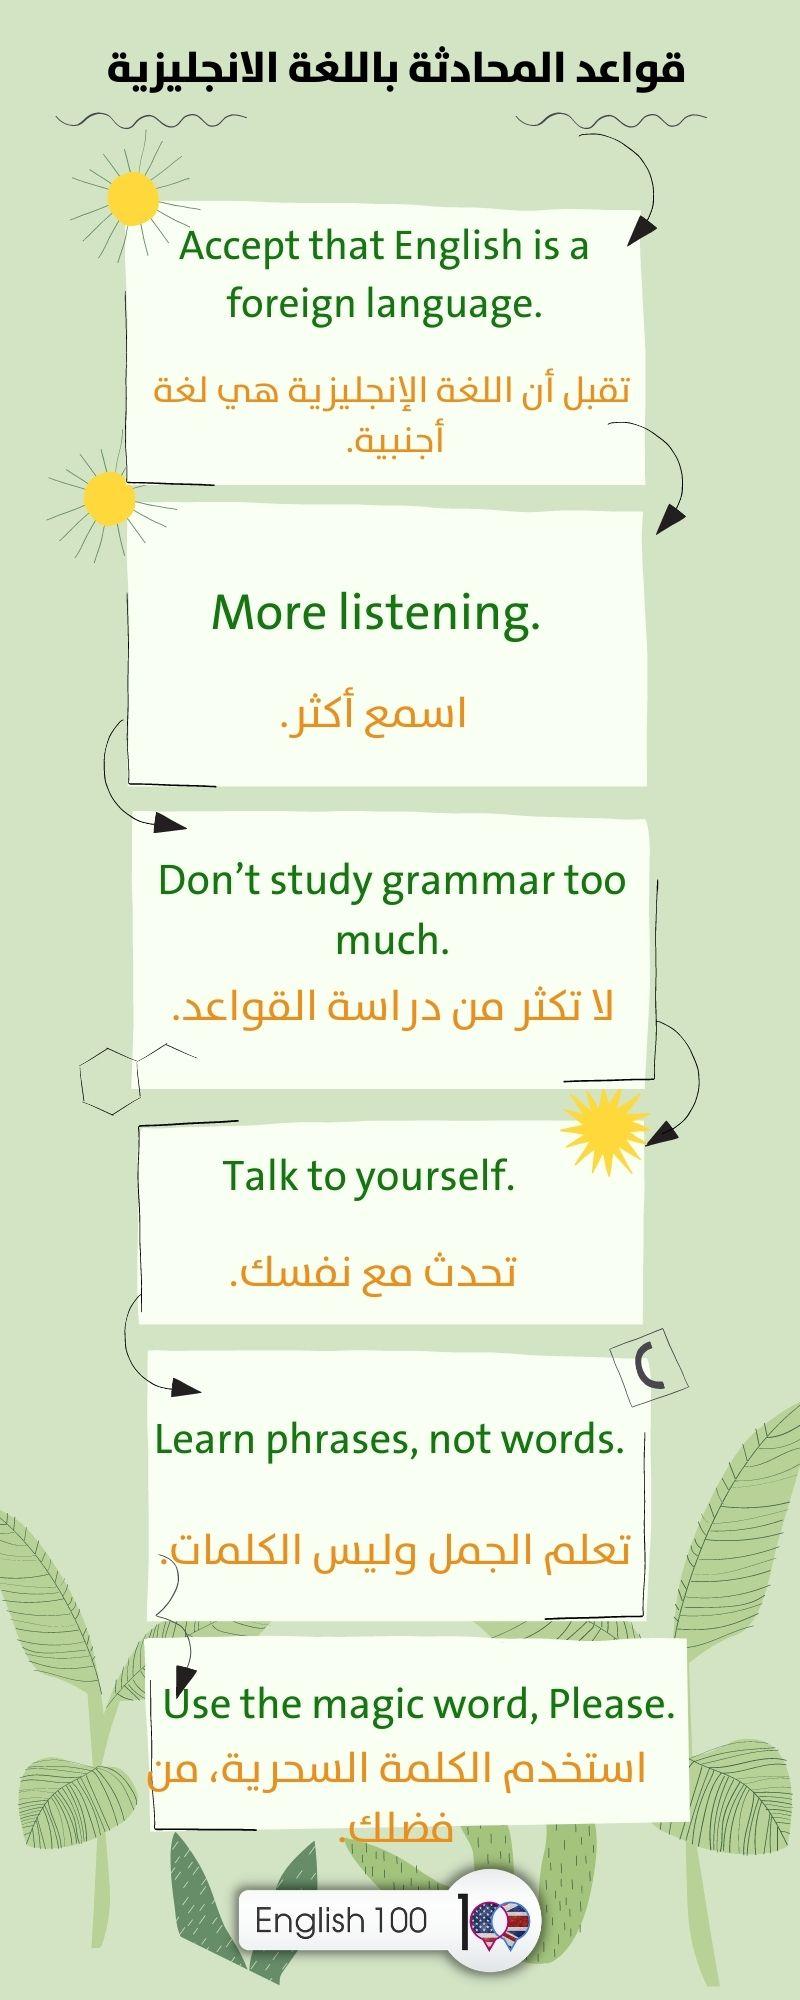 قواعد المحادثة باللغة الانجليزية English conversation rules